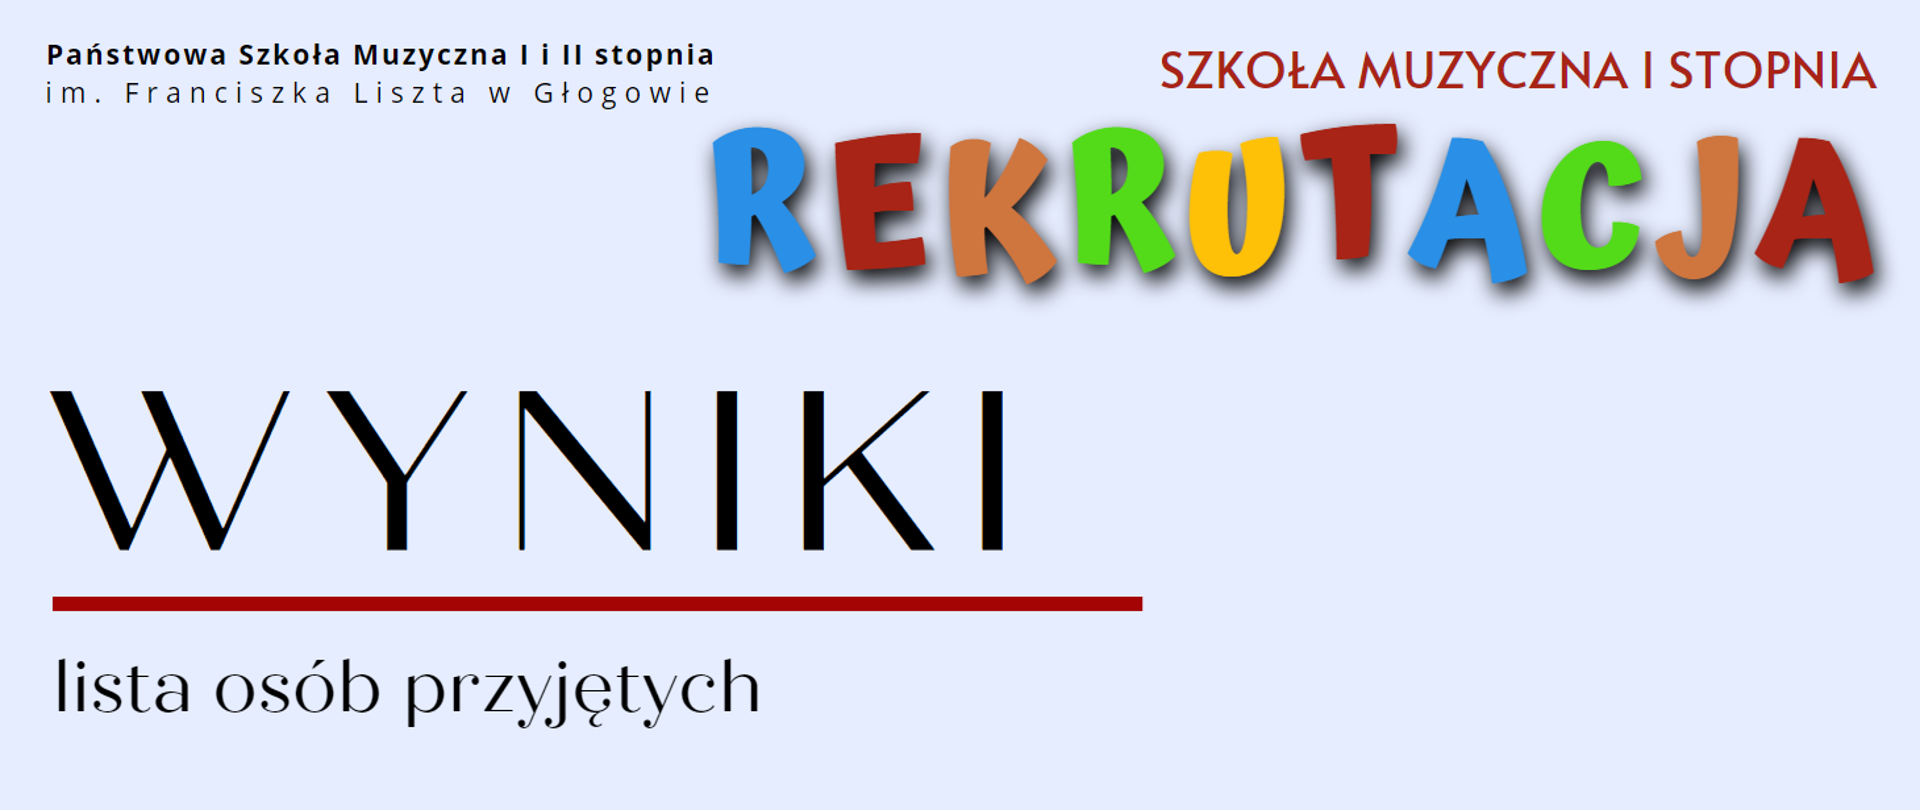 W lewym górnym rogu pełna nazwa szkoły, w kolorze czarnym, w dwóch rzędach: "Państwowa Szkoła Muzyczna I i II stopnia im. Franciszka Liszta w Głogowie". W prawym górnym rogu czerwony napis "SZKOŁA MUZYCZNA I STOPNIA". Niżej napis "REKRUTACJA" z kolorowych liter. W dolnej części z lewej strony wyróżnione dużą czcionką słowo "WYNIKI" w kolorze czarnym. Pod nim czerwona pozioma linia. Pod linią test: "lista osób przyjętych" w kolorze czarnym. Tło grafiki jasnoniebieskie.